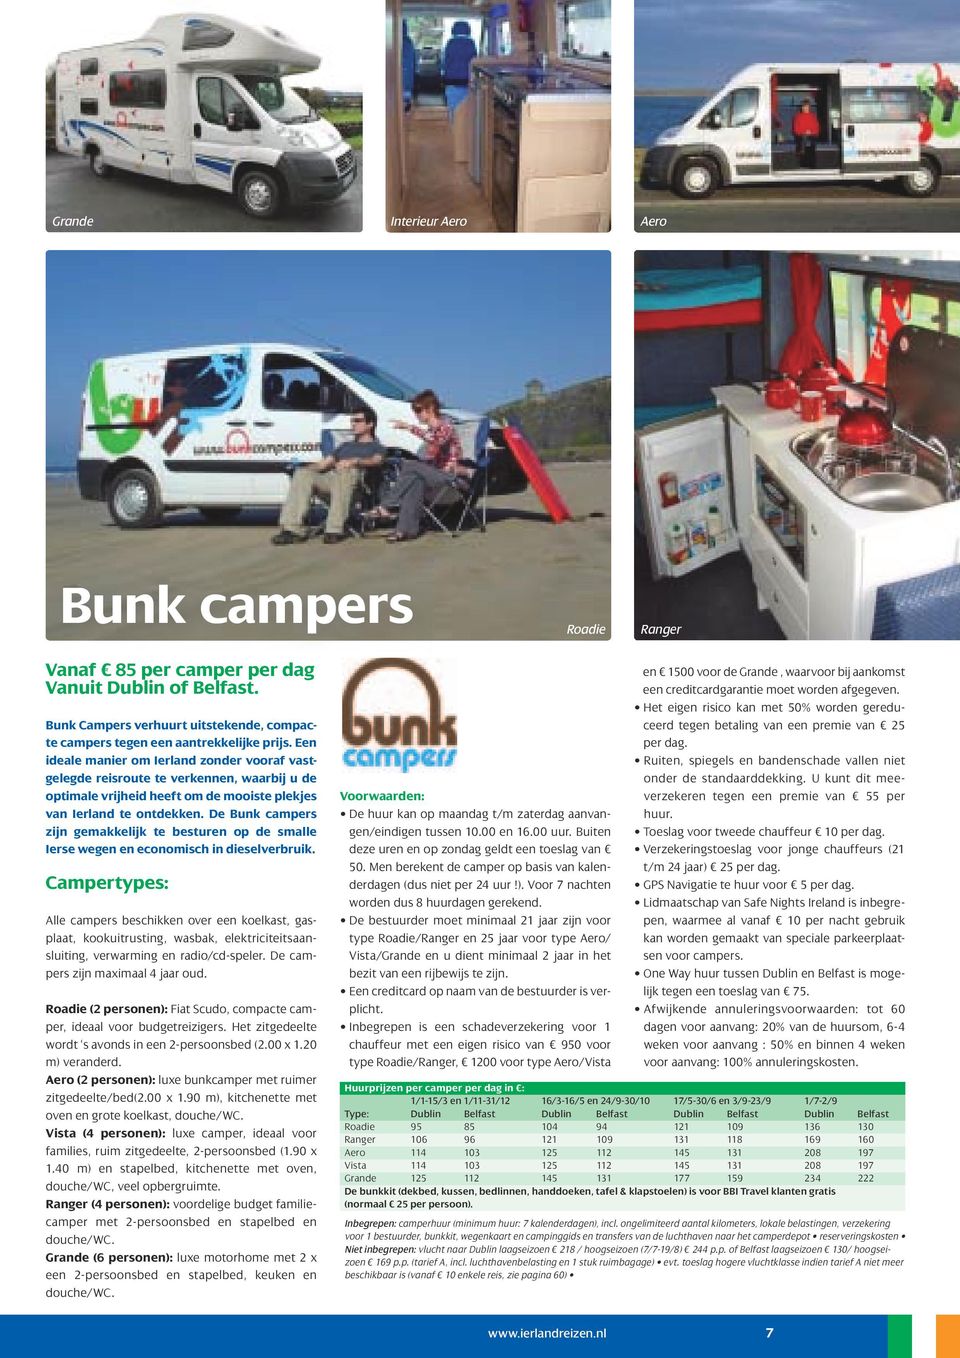 De Bunk campers zijn gemakkelijk te besturen op de smalle Ierse wegen en economisch in dieselverbruik.